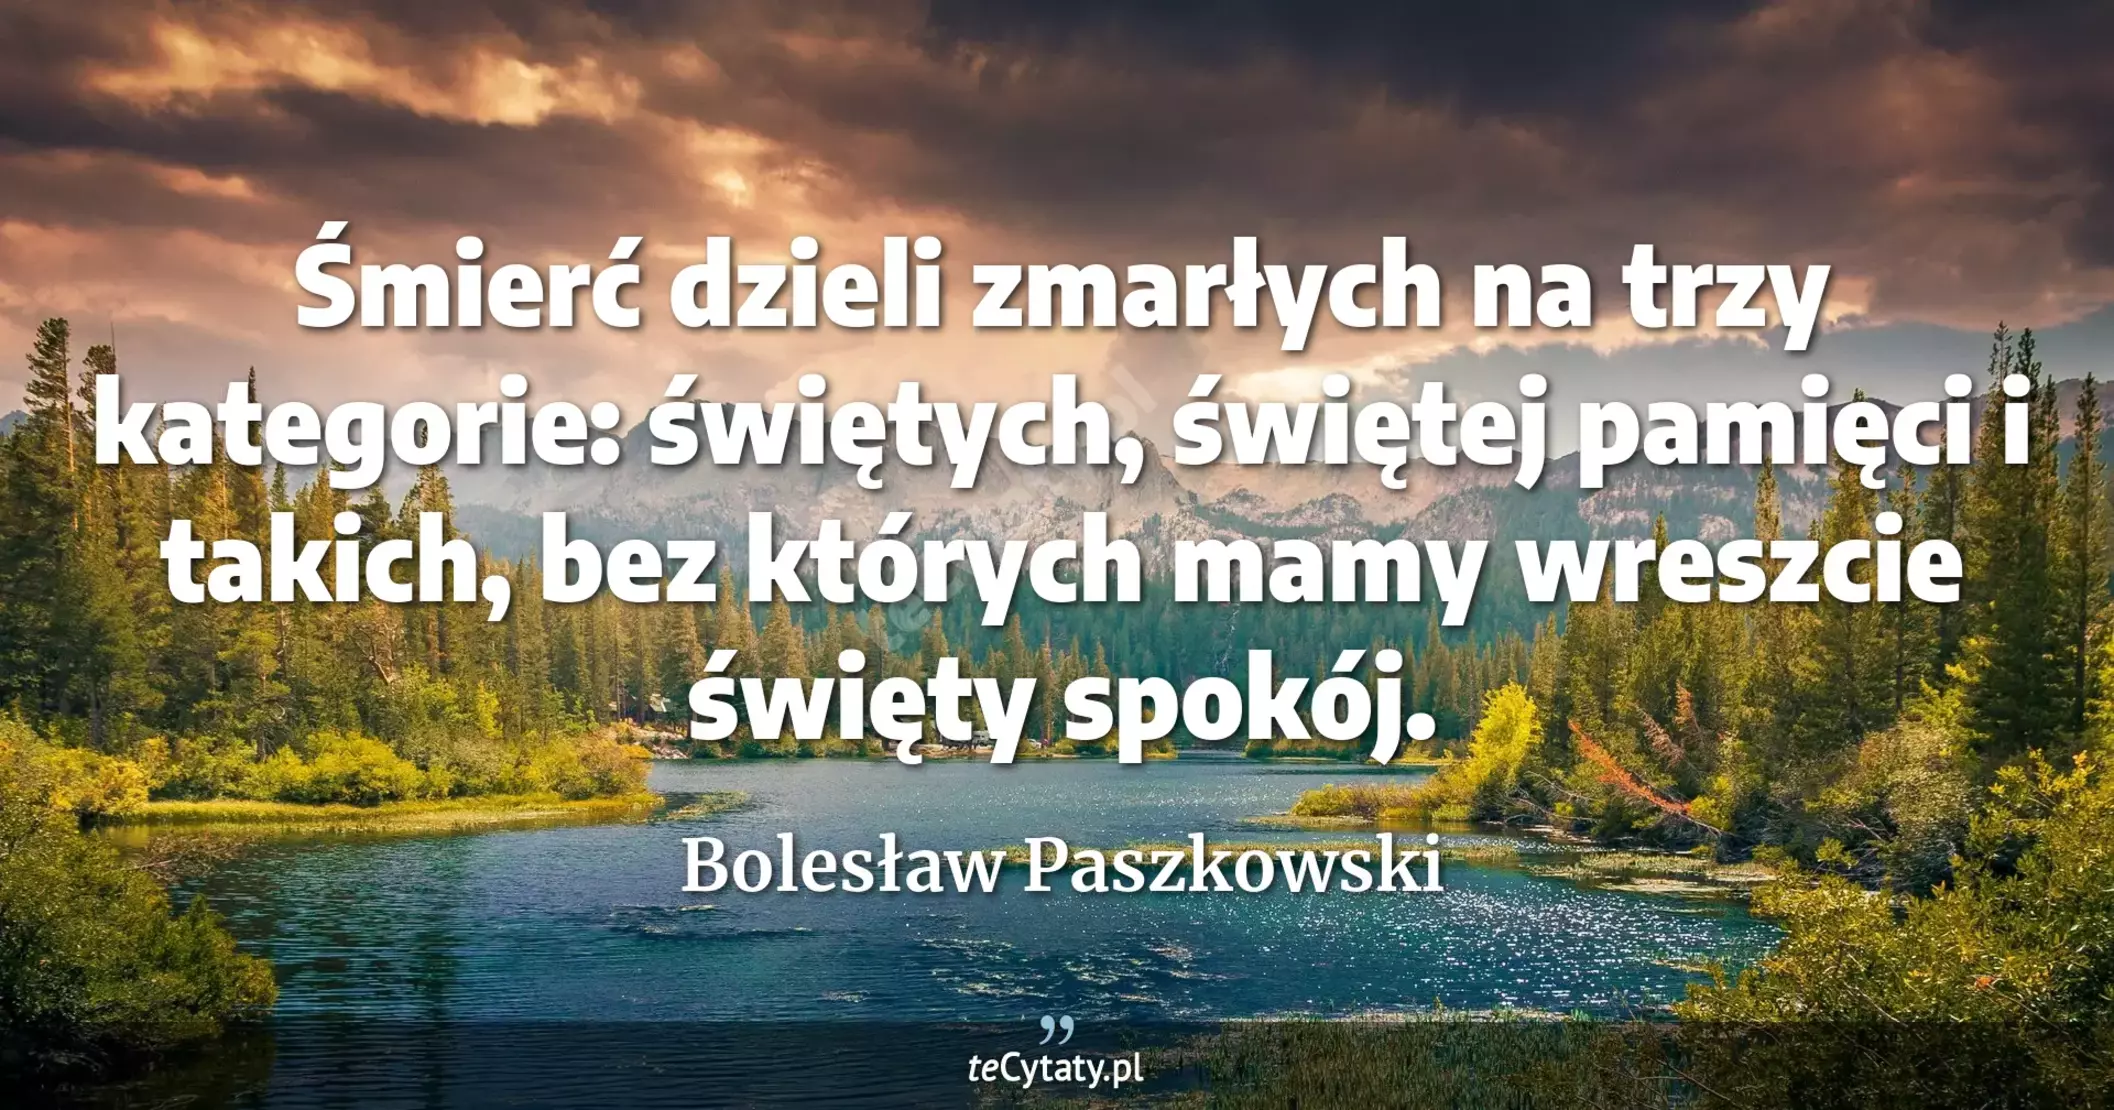 Śmierć dzieli zmarłych na trzy kategorie: świętych, świętej pamięci i takich, bez których mamy wreszcie święty spokój. - Bolesław Paszkowski